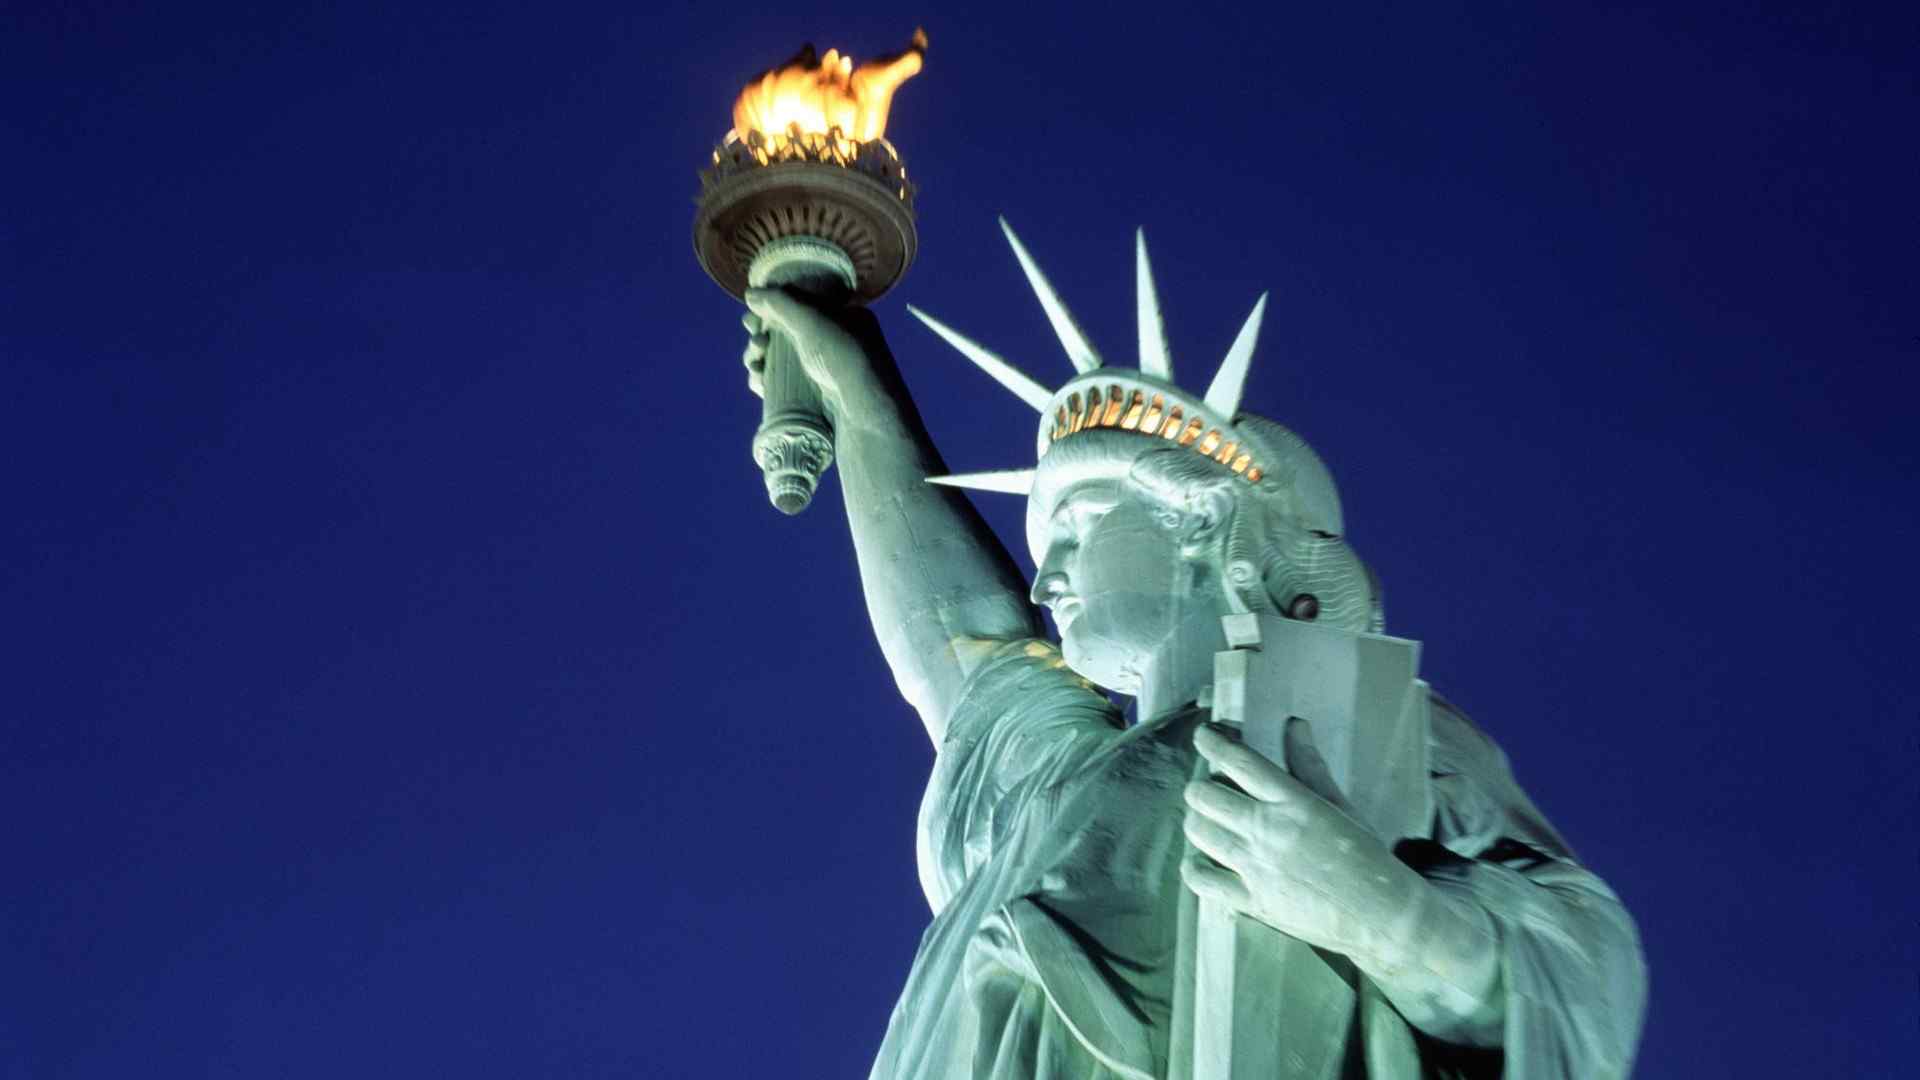 象征自由的美国自由女神像唯美图片桌面壁纸 第二辑